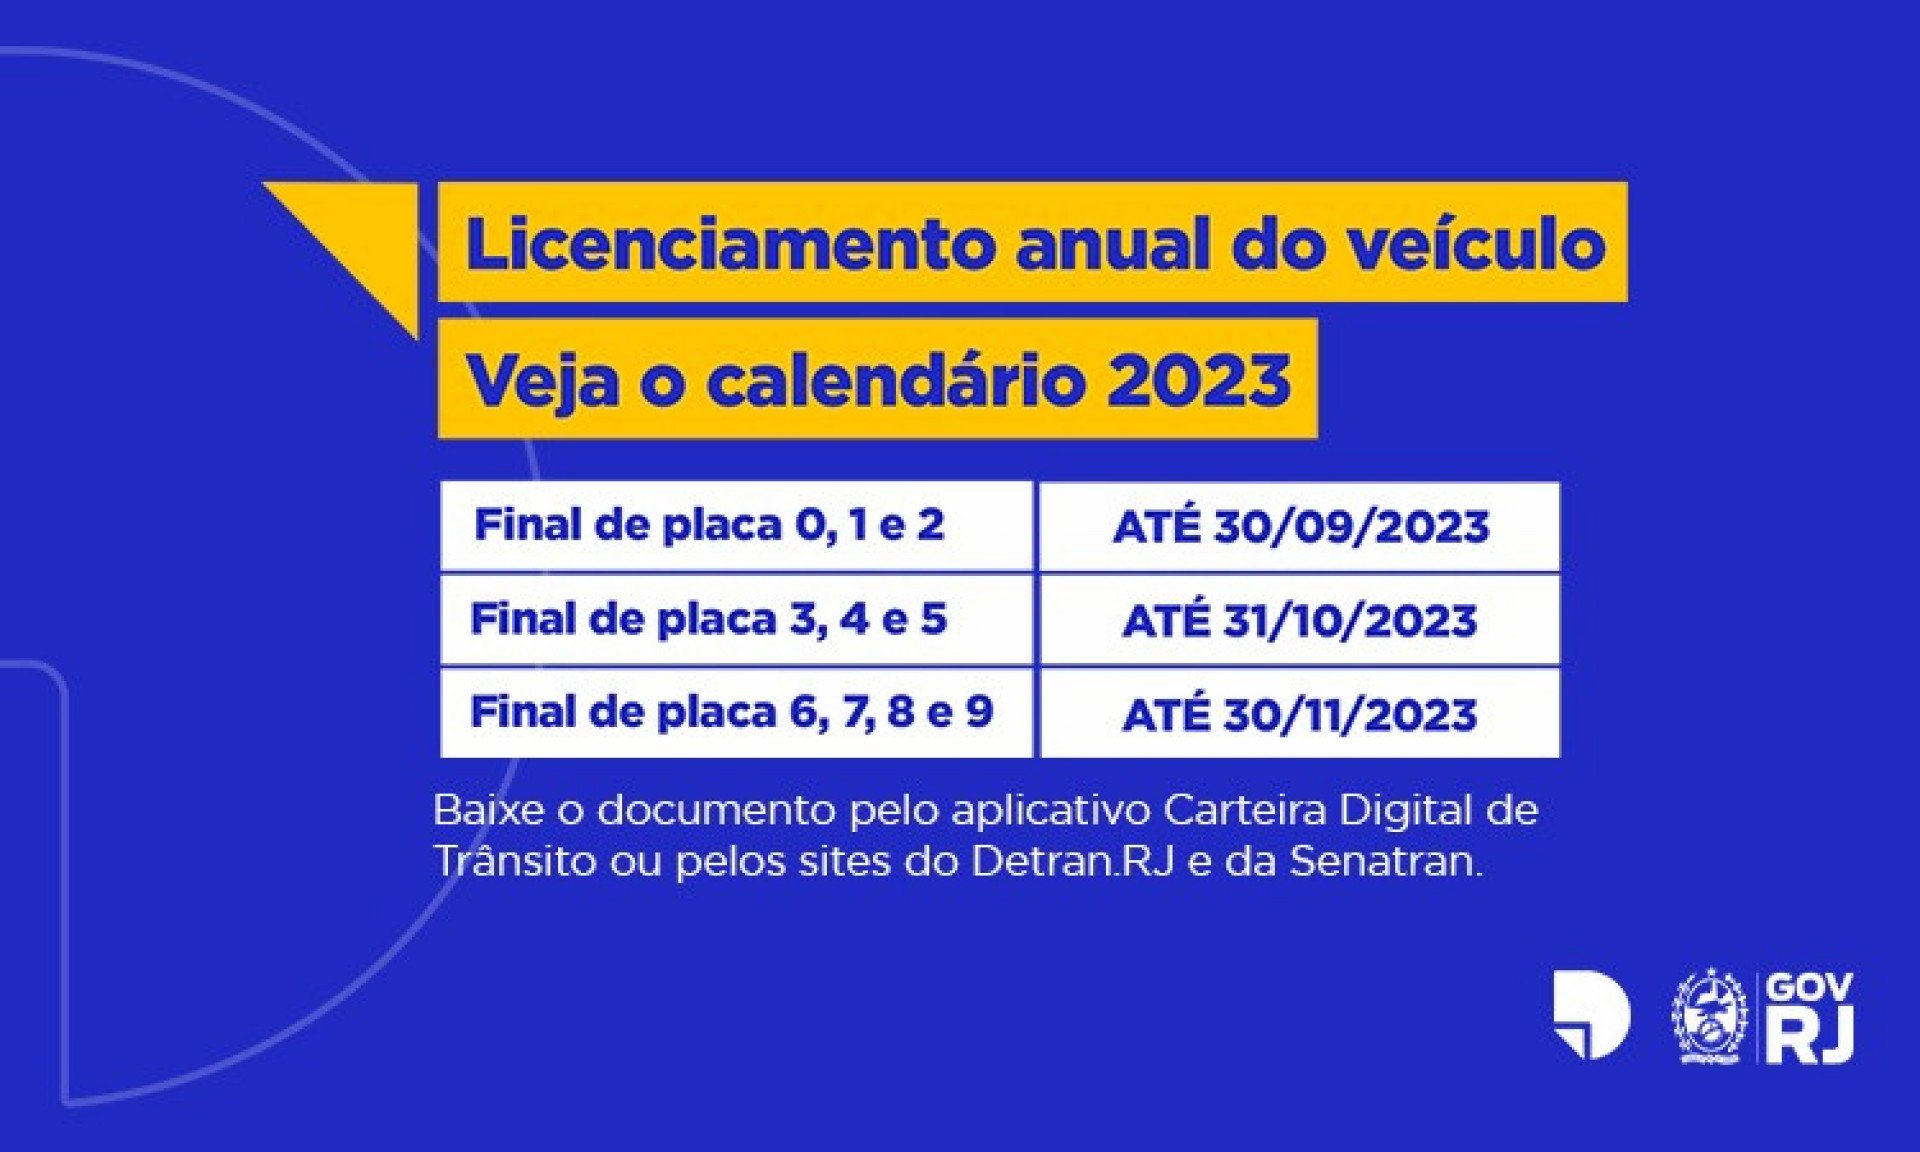 Calendário do Dentra-RJ para licenciamento de 2023 - Alexandre Simonini/Detran-RJ